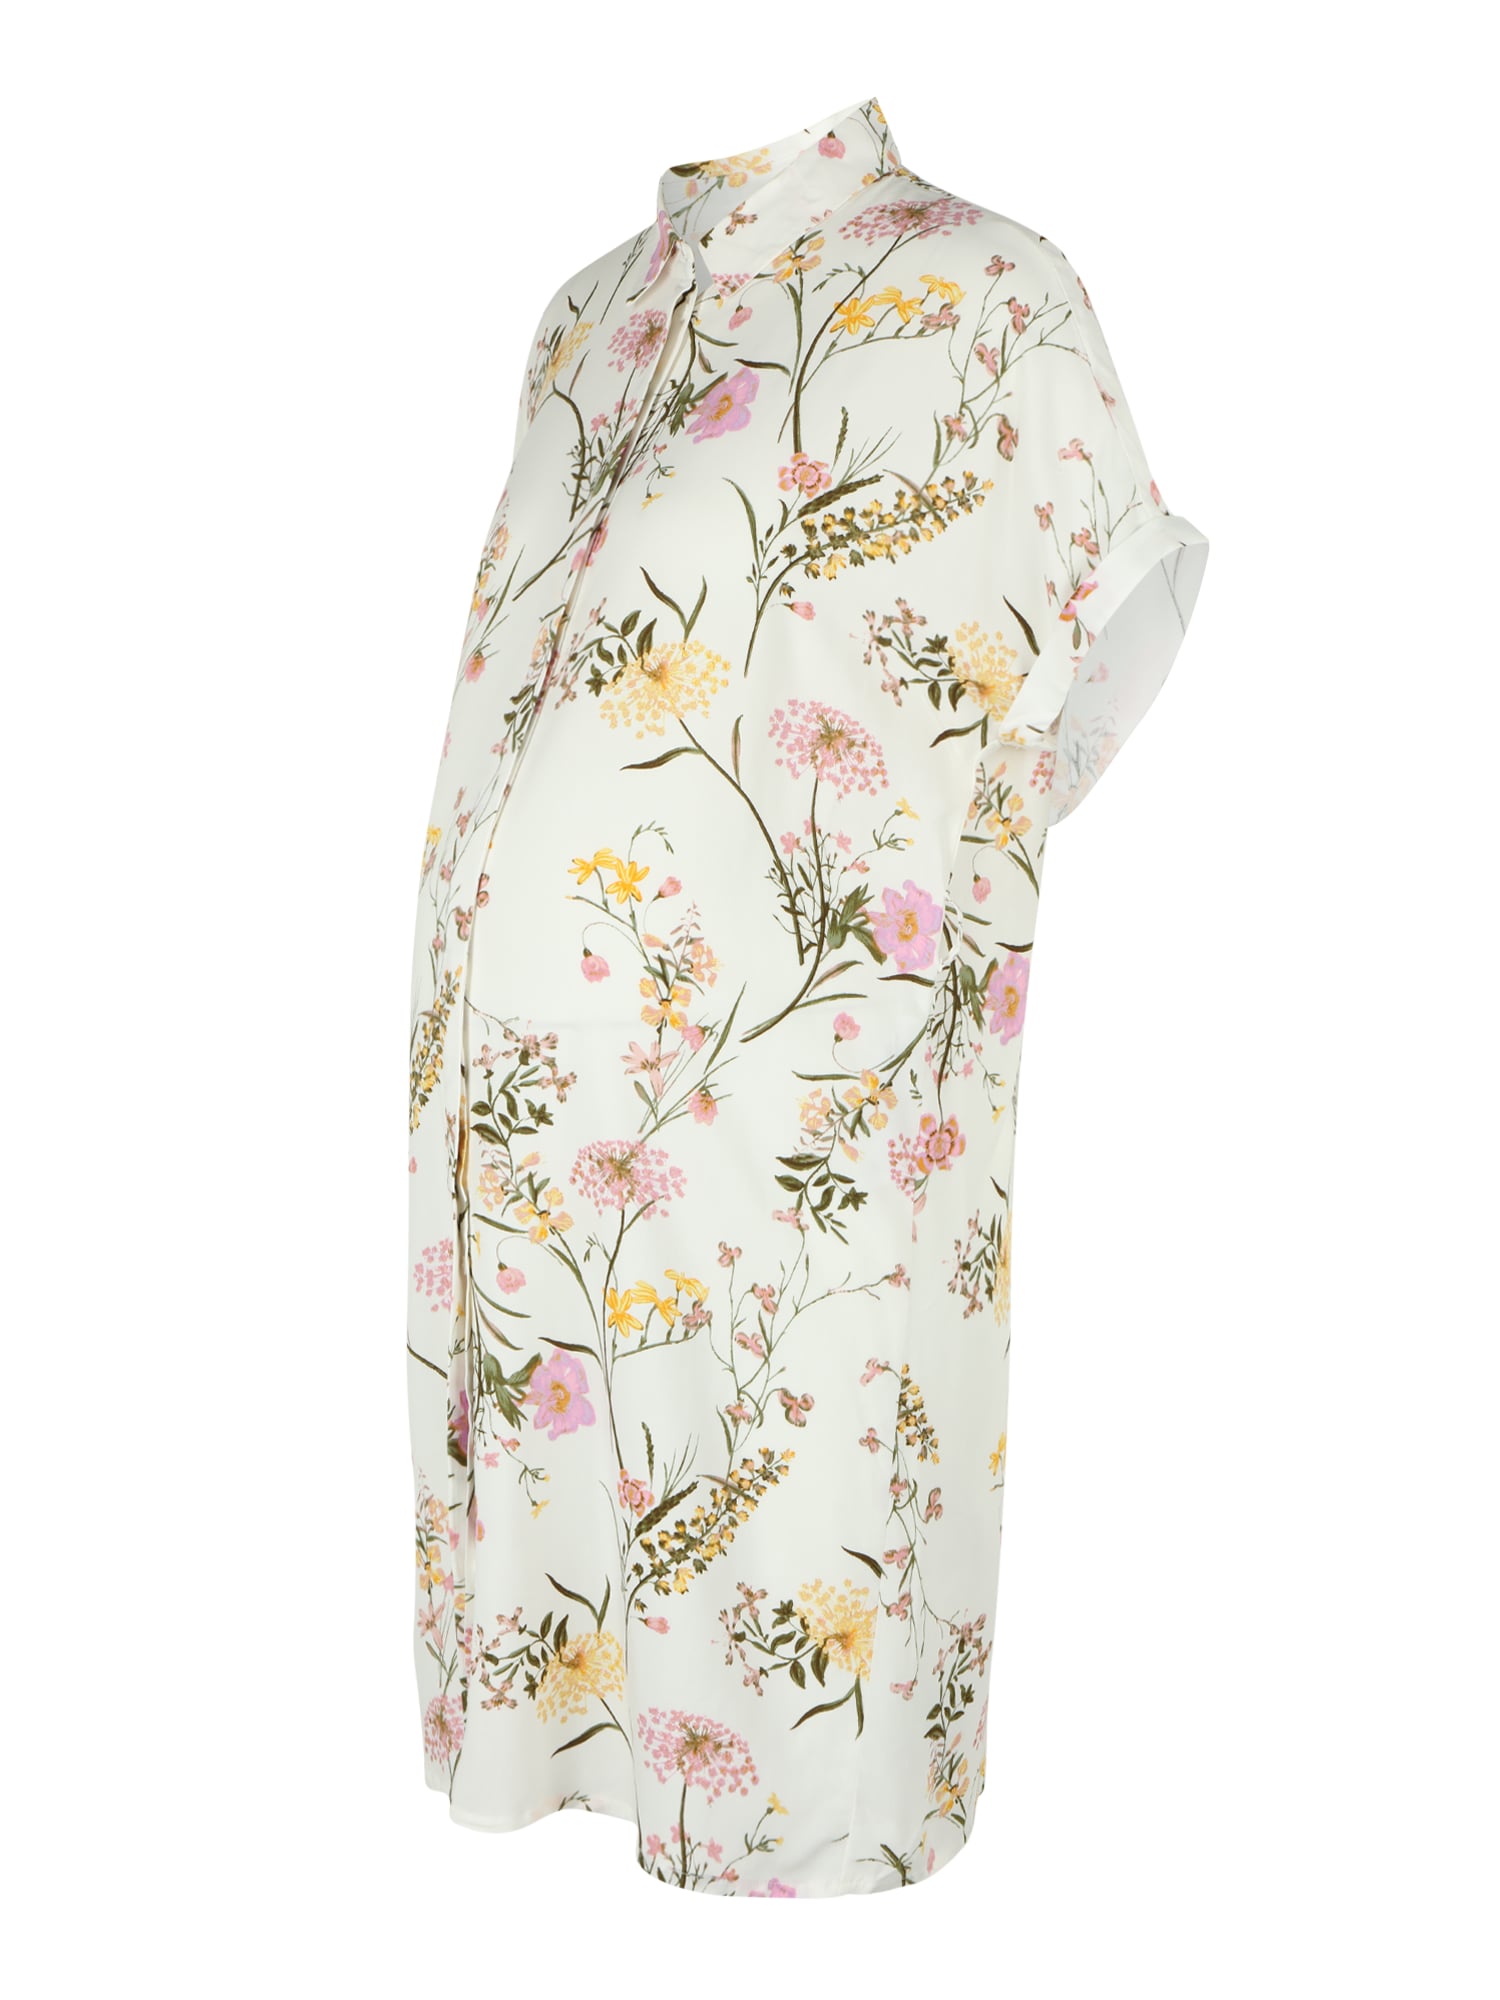 Vero Moda Maternity Palaidinės tipo suknelė 'Measy' balta / rusvai žalia / rožių spalva